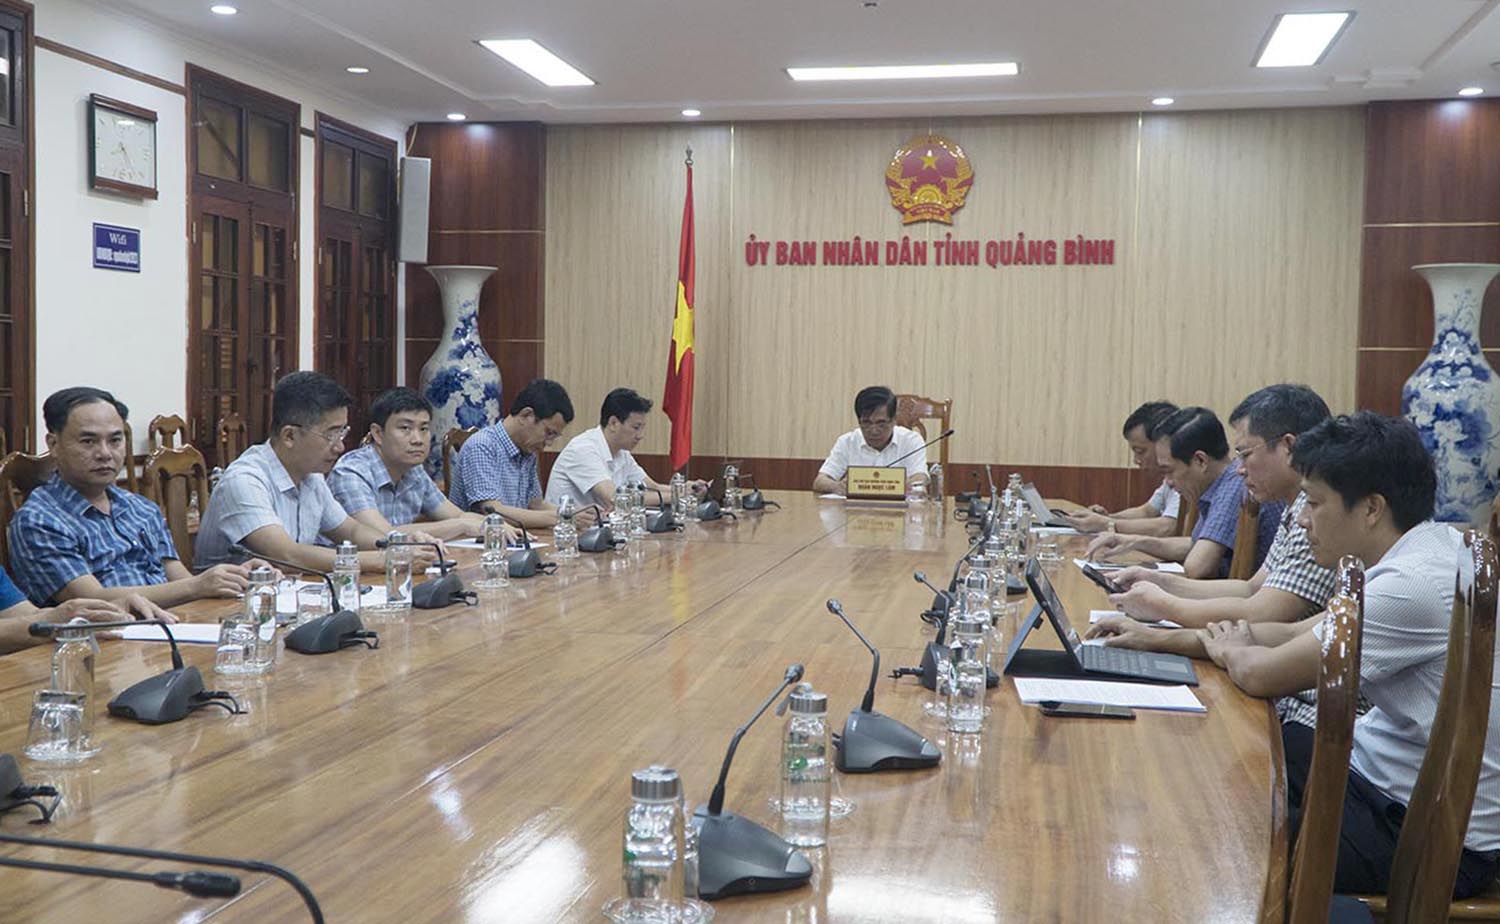 Đồng chí Phó Chủ tịch Thường trực UBND tỉnh Đoàn Ngọc Lâm chủ trì điểm cầu tại Quảng Bình